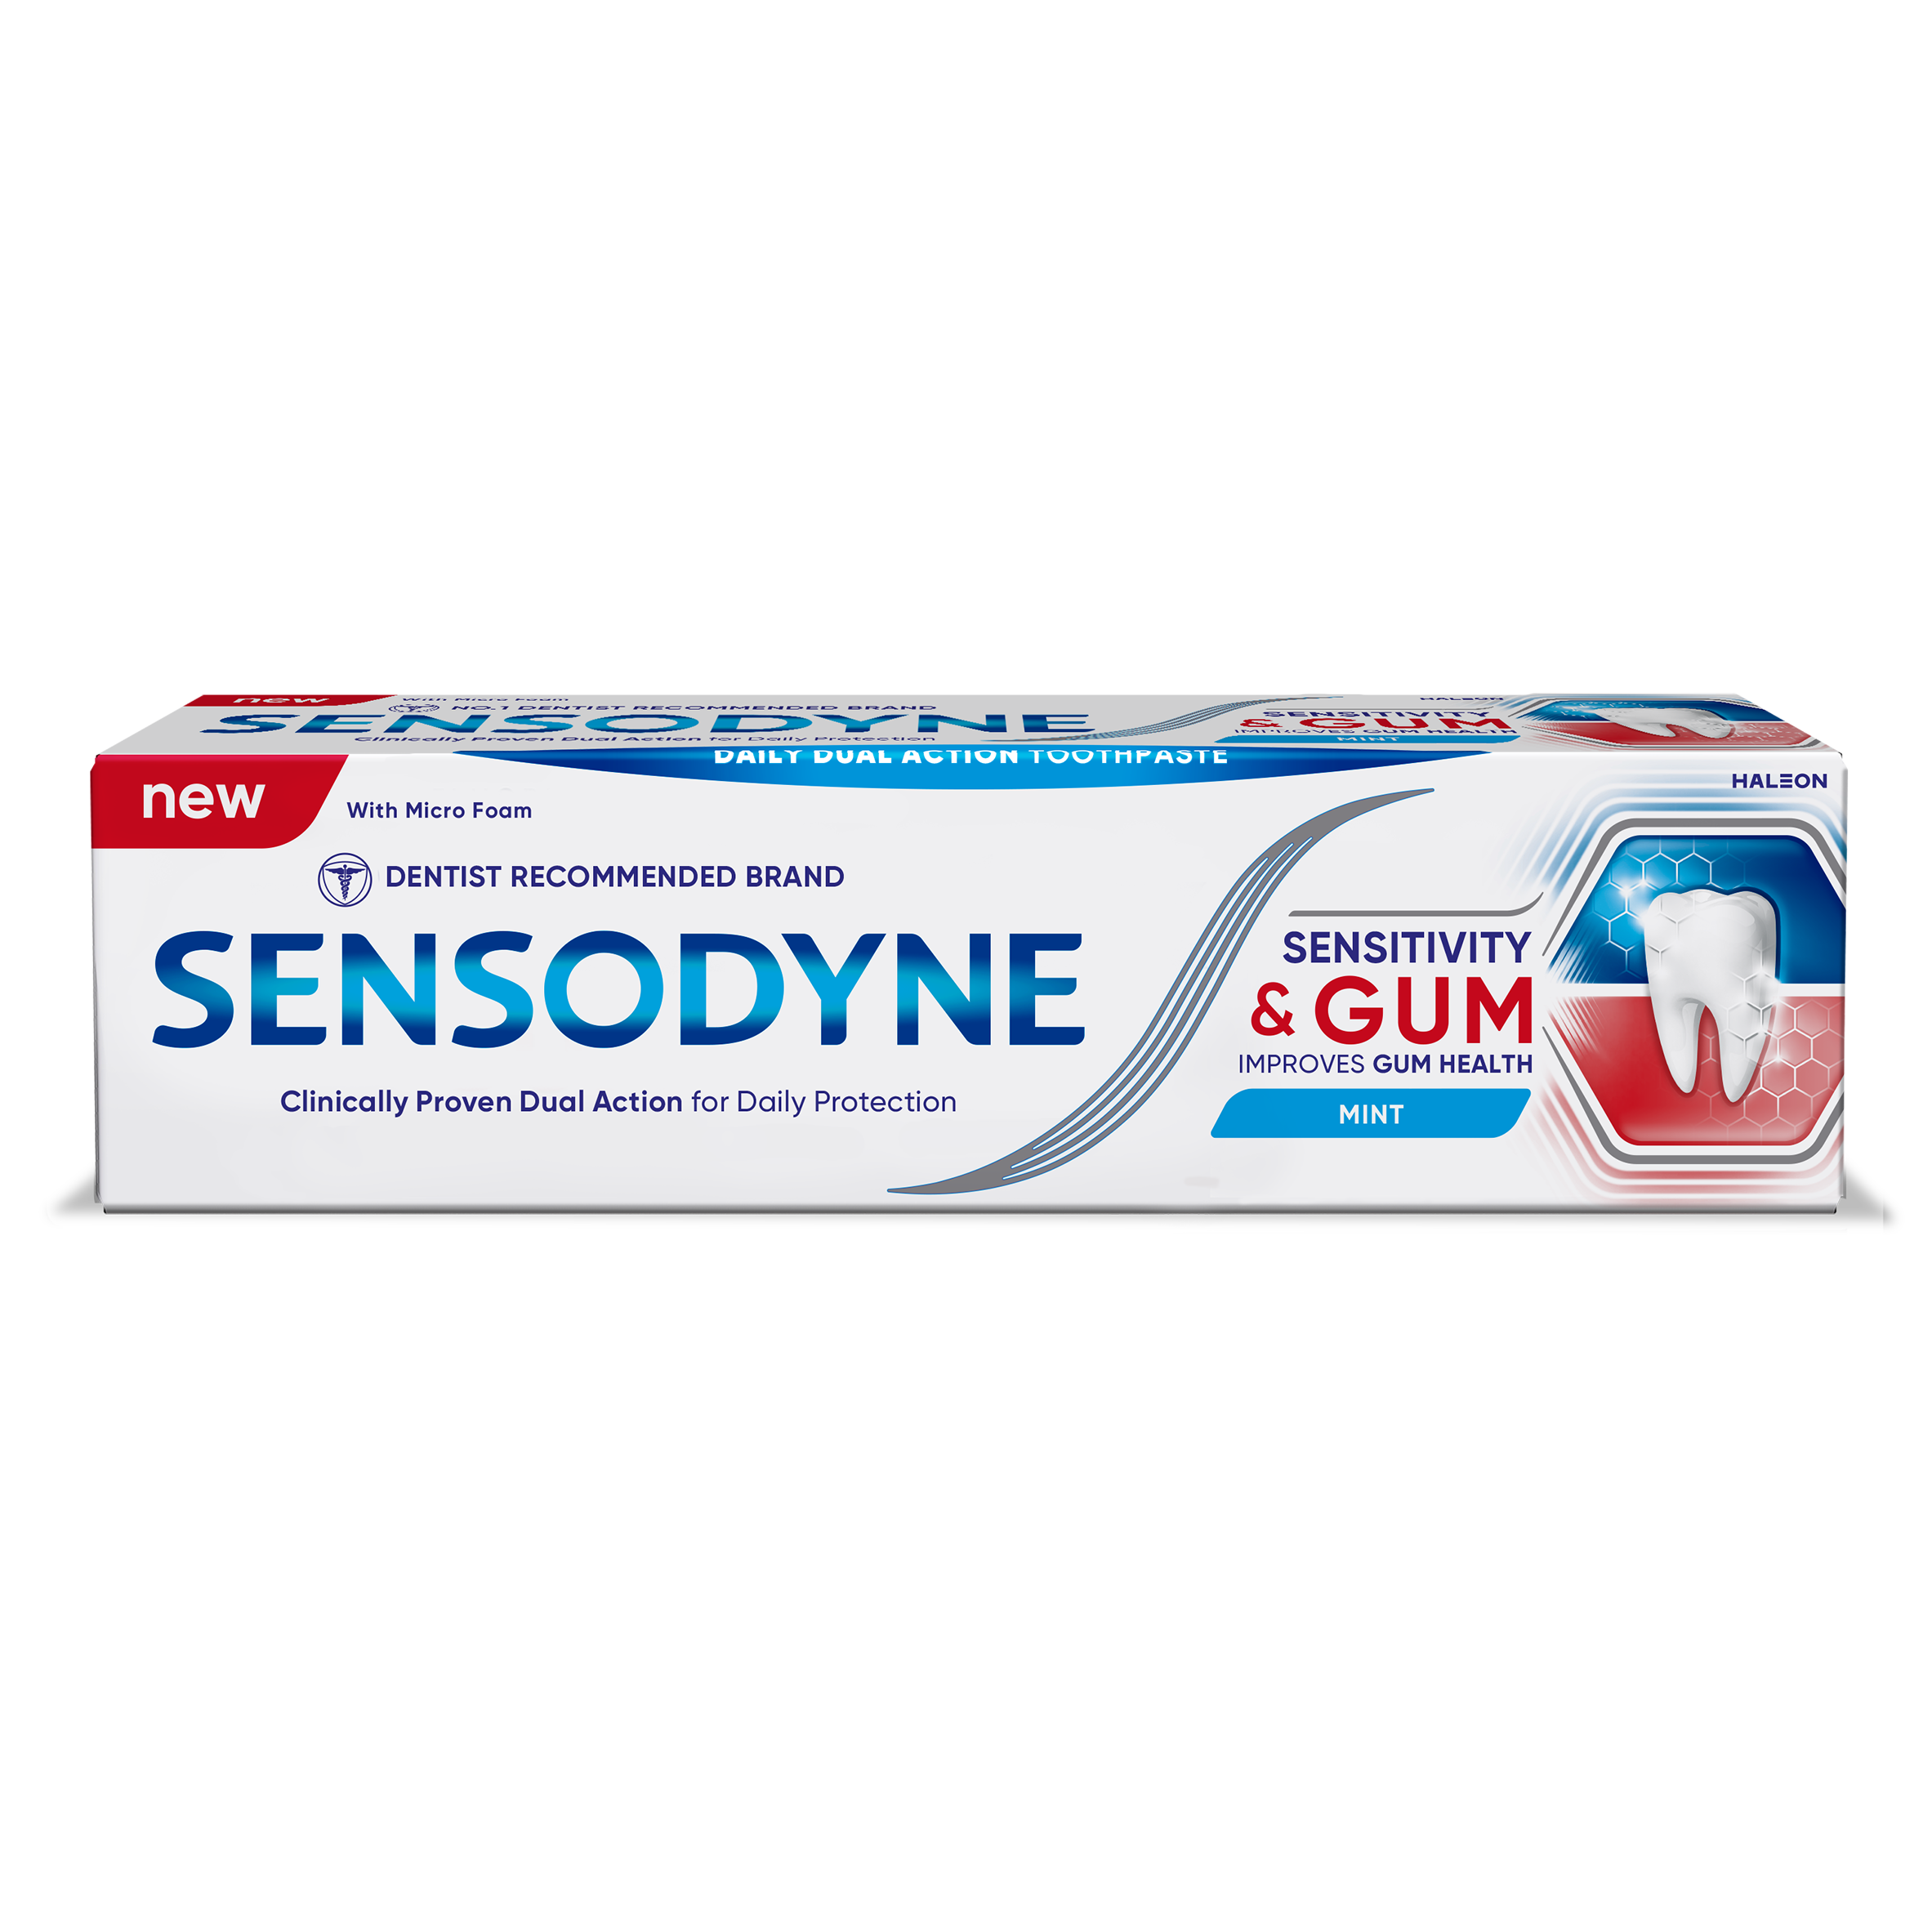 Sensodyne revitalises formula and packaging for sensitivity and gum range